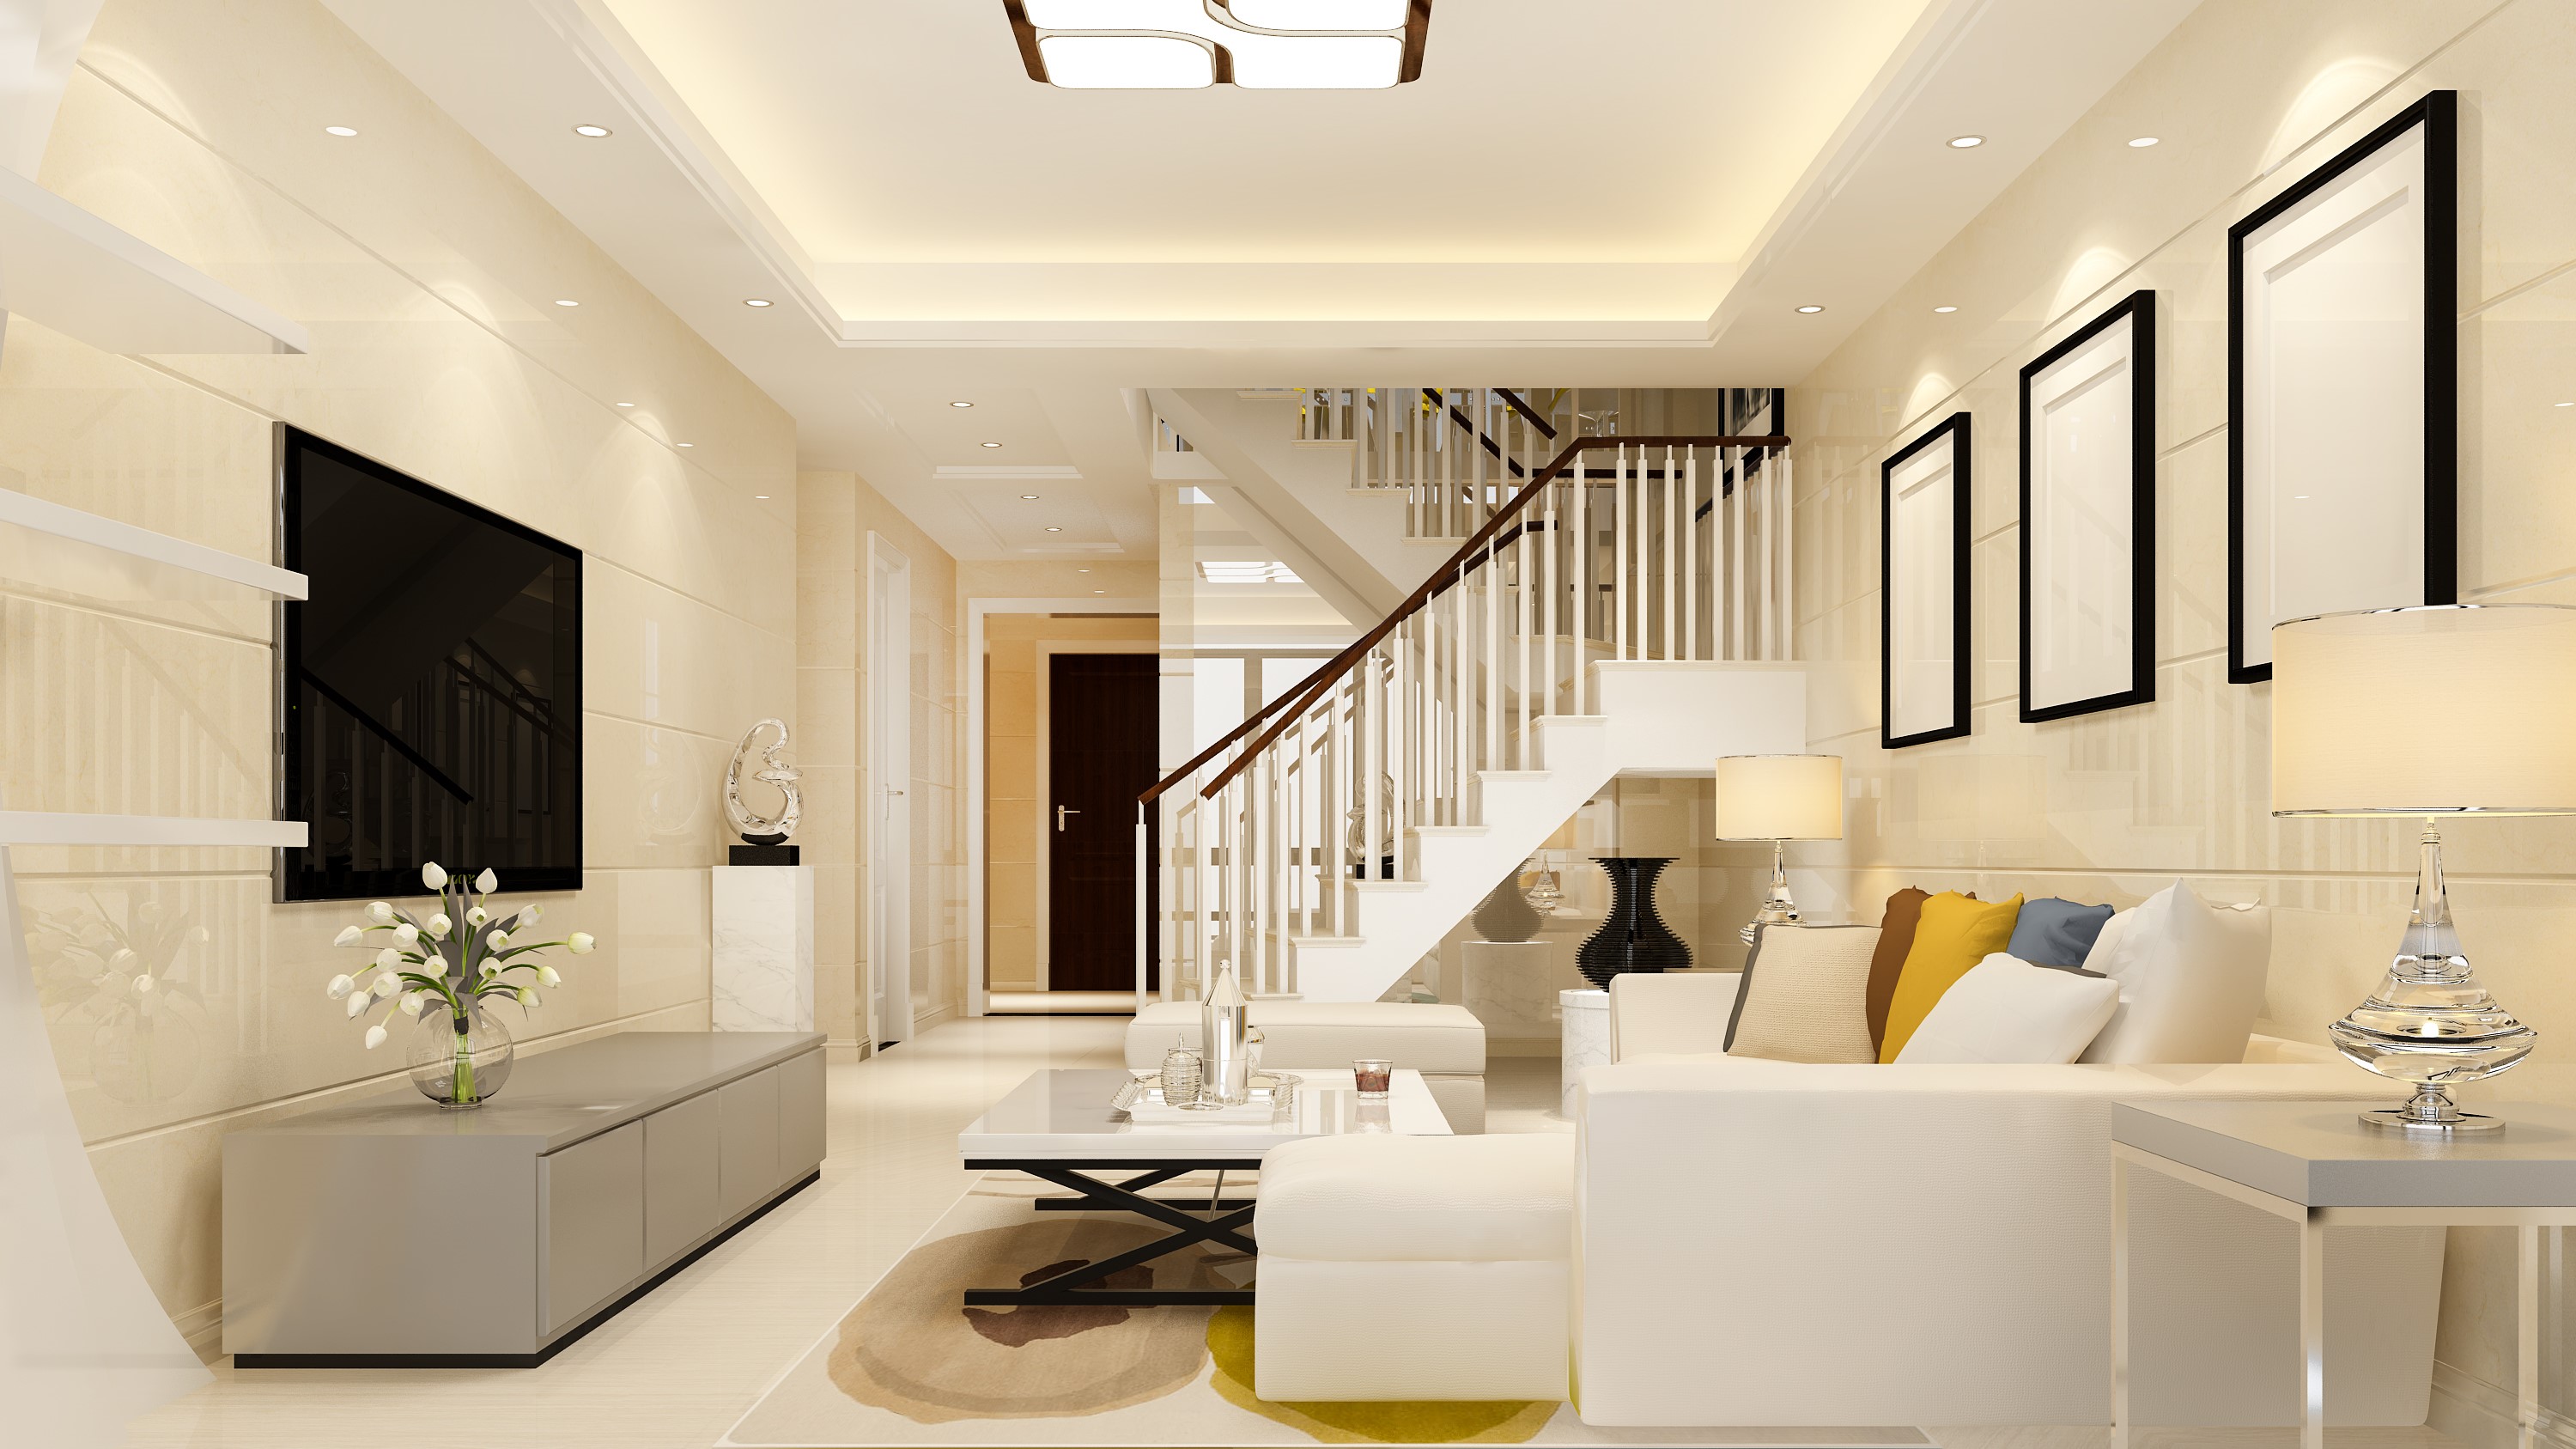 3d rendering white wood living room near bedroom upstair